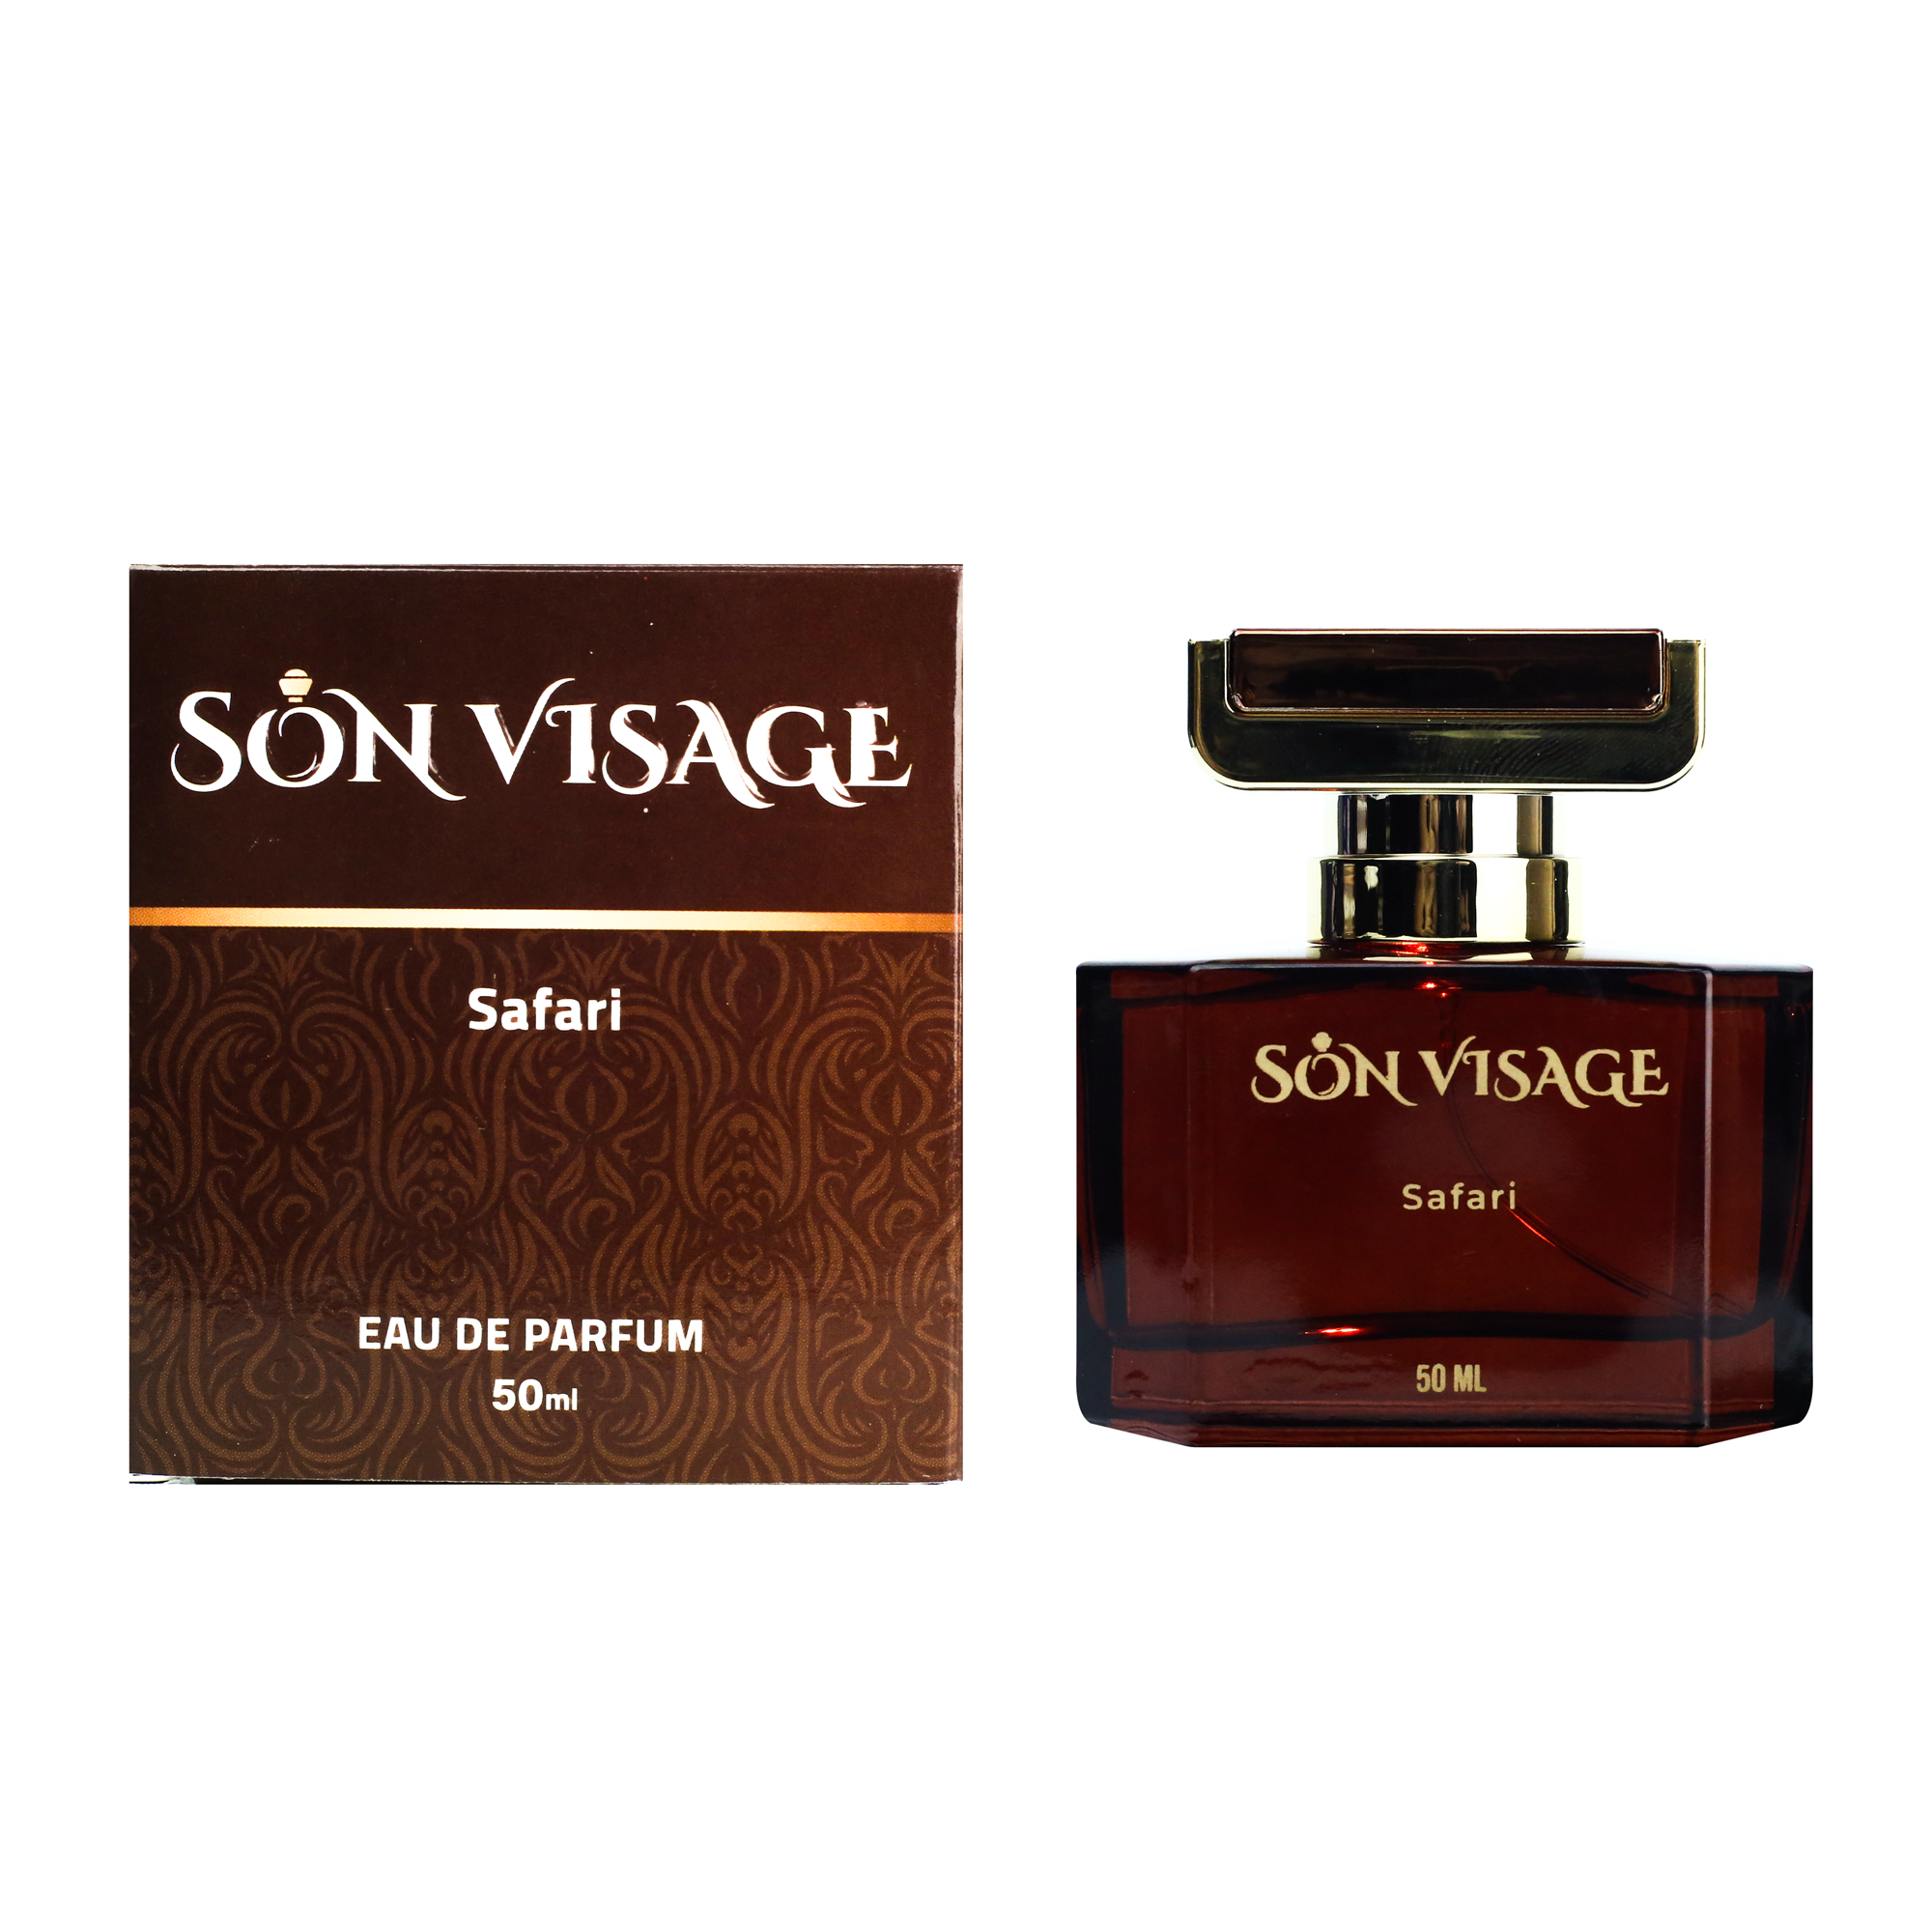 Safari by Son Visage for Unisex - Eau de parfum, 50 ml